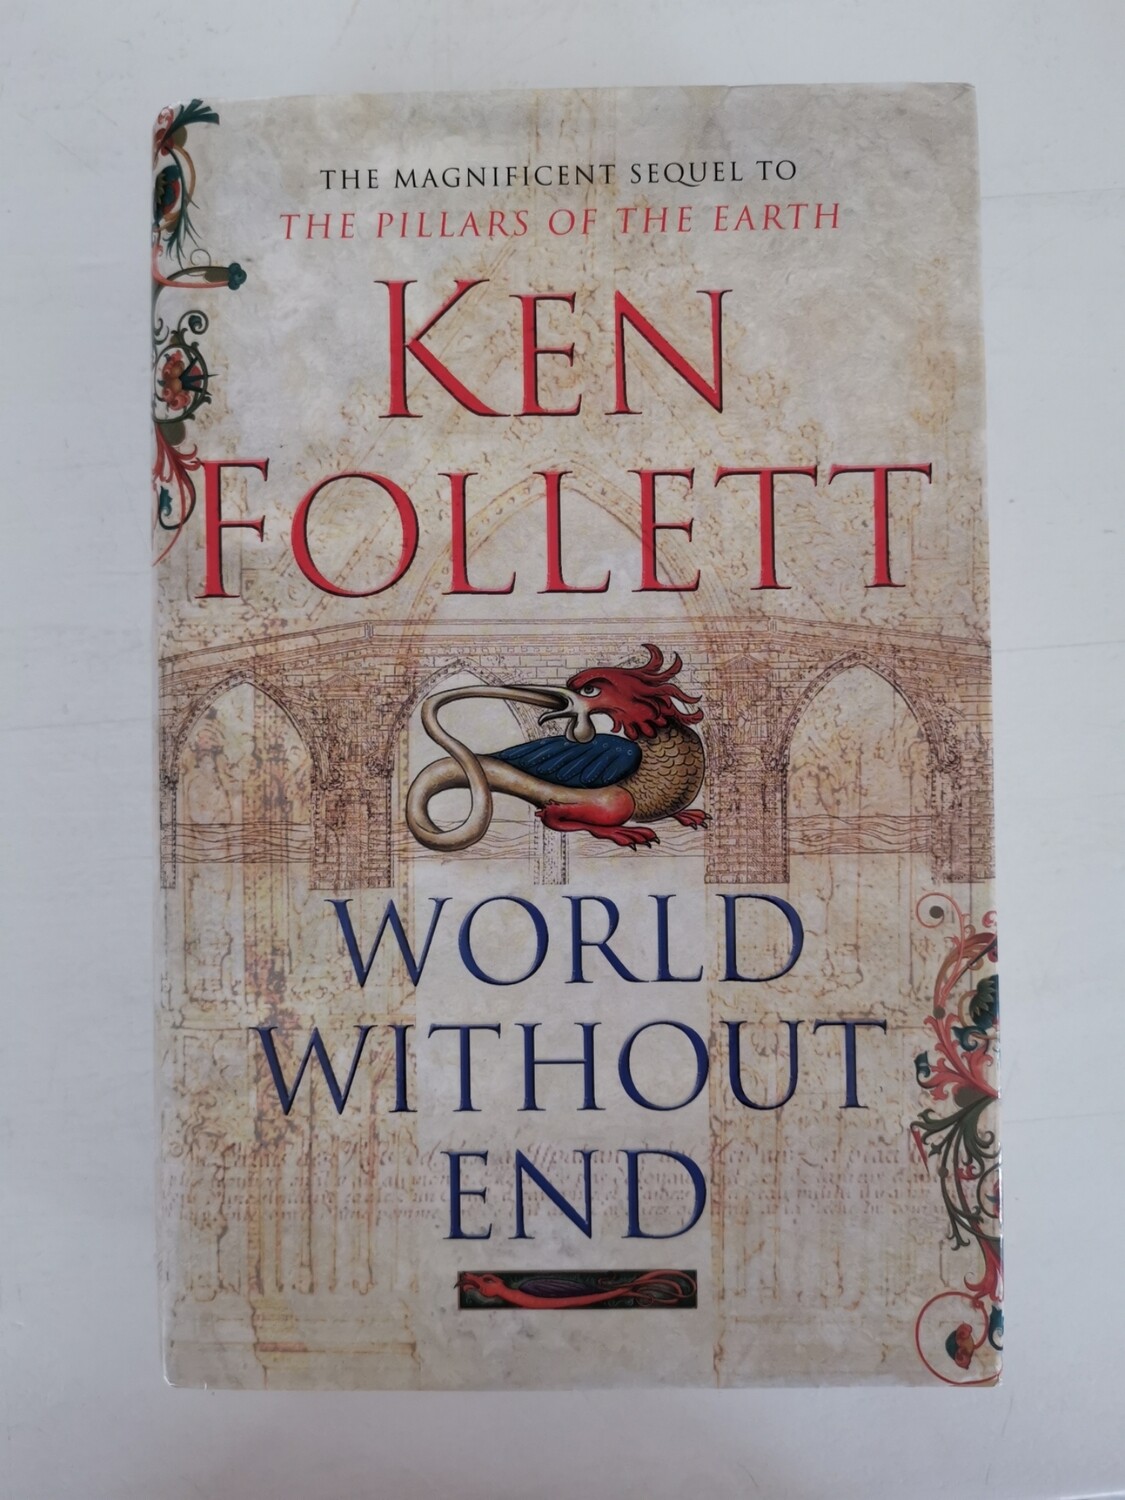 World without end, Ken Follett